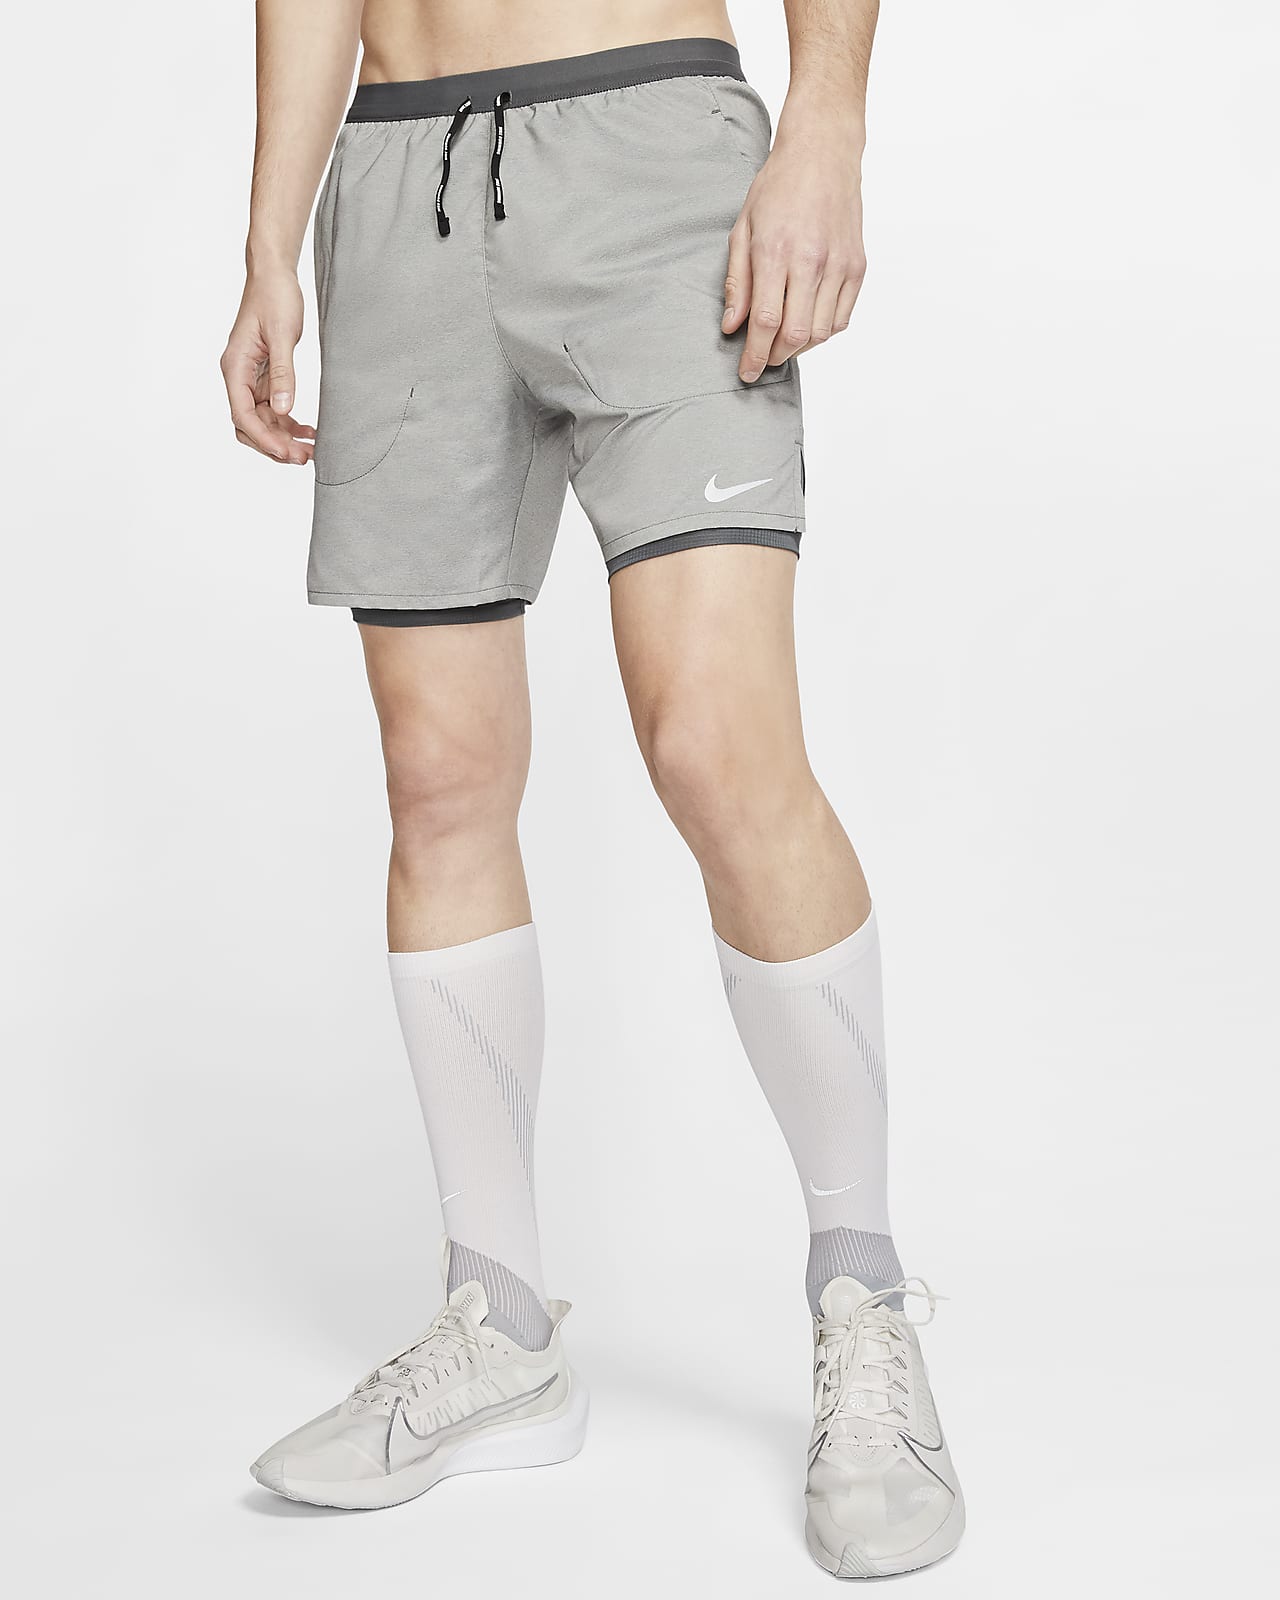 grey nike running shorts mens